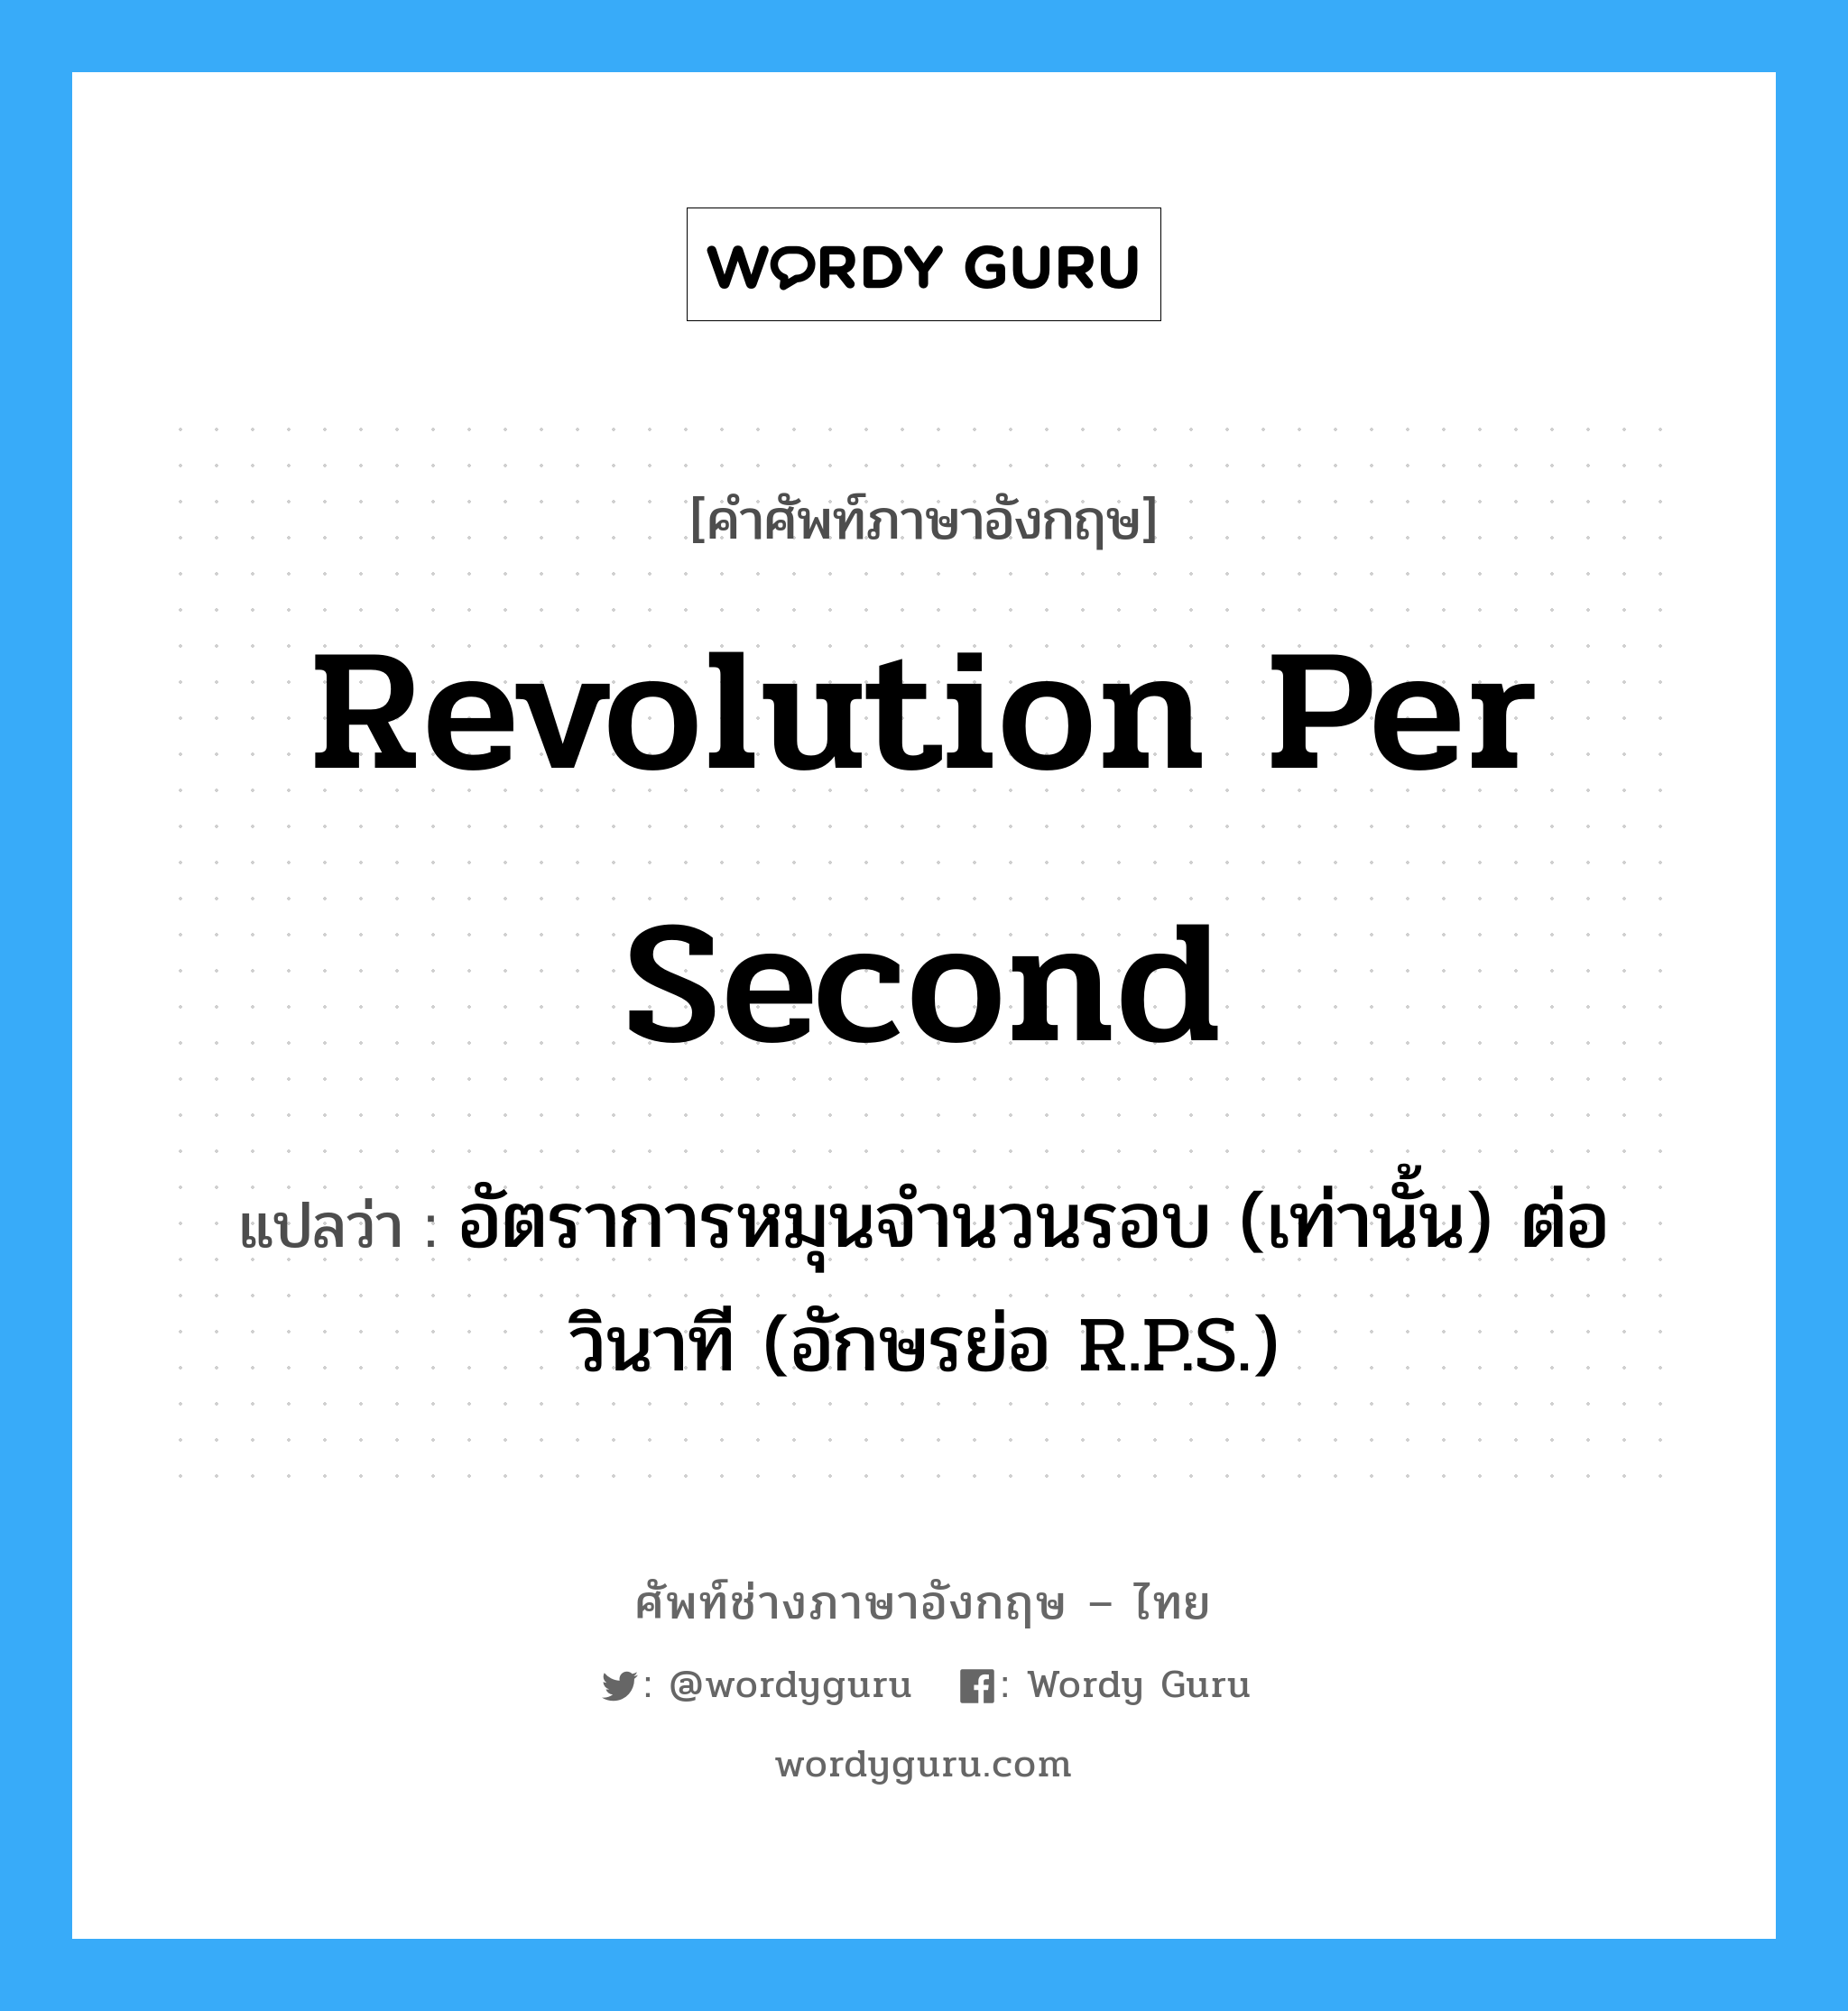 revolution per second แปลว่า?, คำศัพท์ช่างภาษาอังกฤษ - ไทย revolution per second คำศัพท์ภาษาอังกฤษ revolution per second แปลว่า อัตราการหมุนจำนวนรอบ (เท่านั้น) ต่อวินาที (อักษรย่อ R.P.S.)